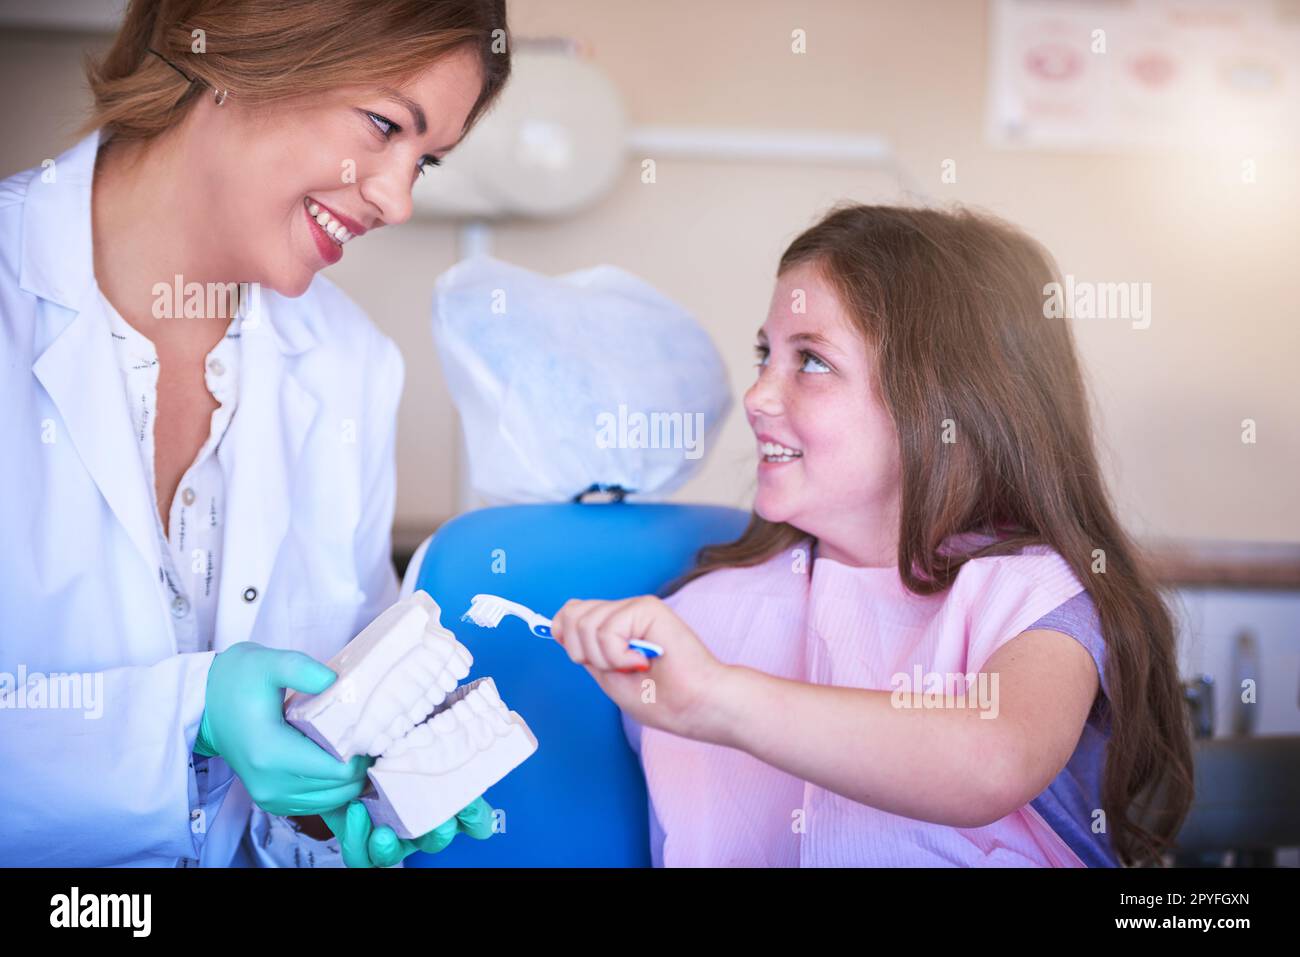 Prévenir la perte et la carie permanentes des dents. une femme dentiste enseignant à sa jeune patiente comment se brosser les dents. Banque D'Images